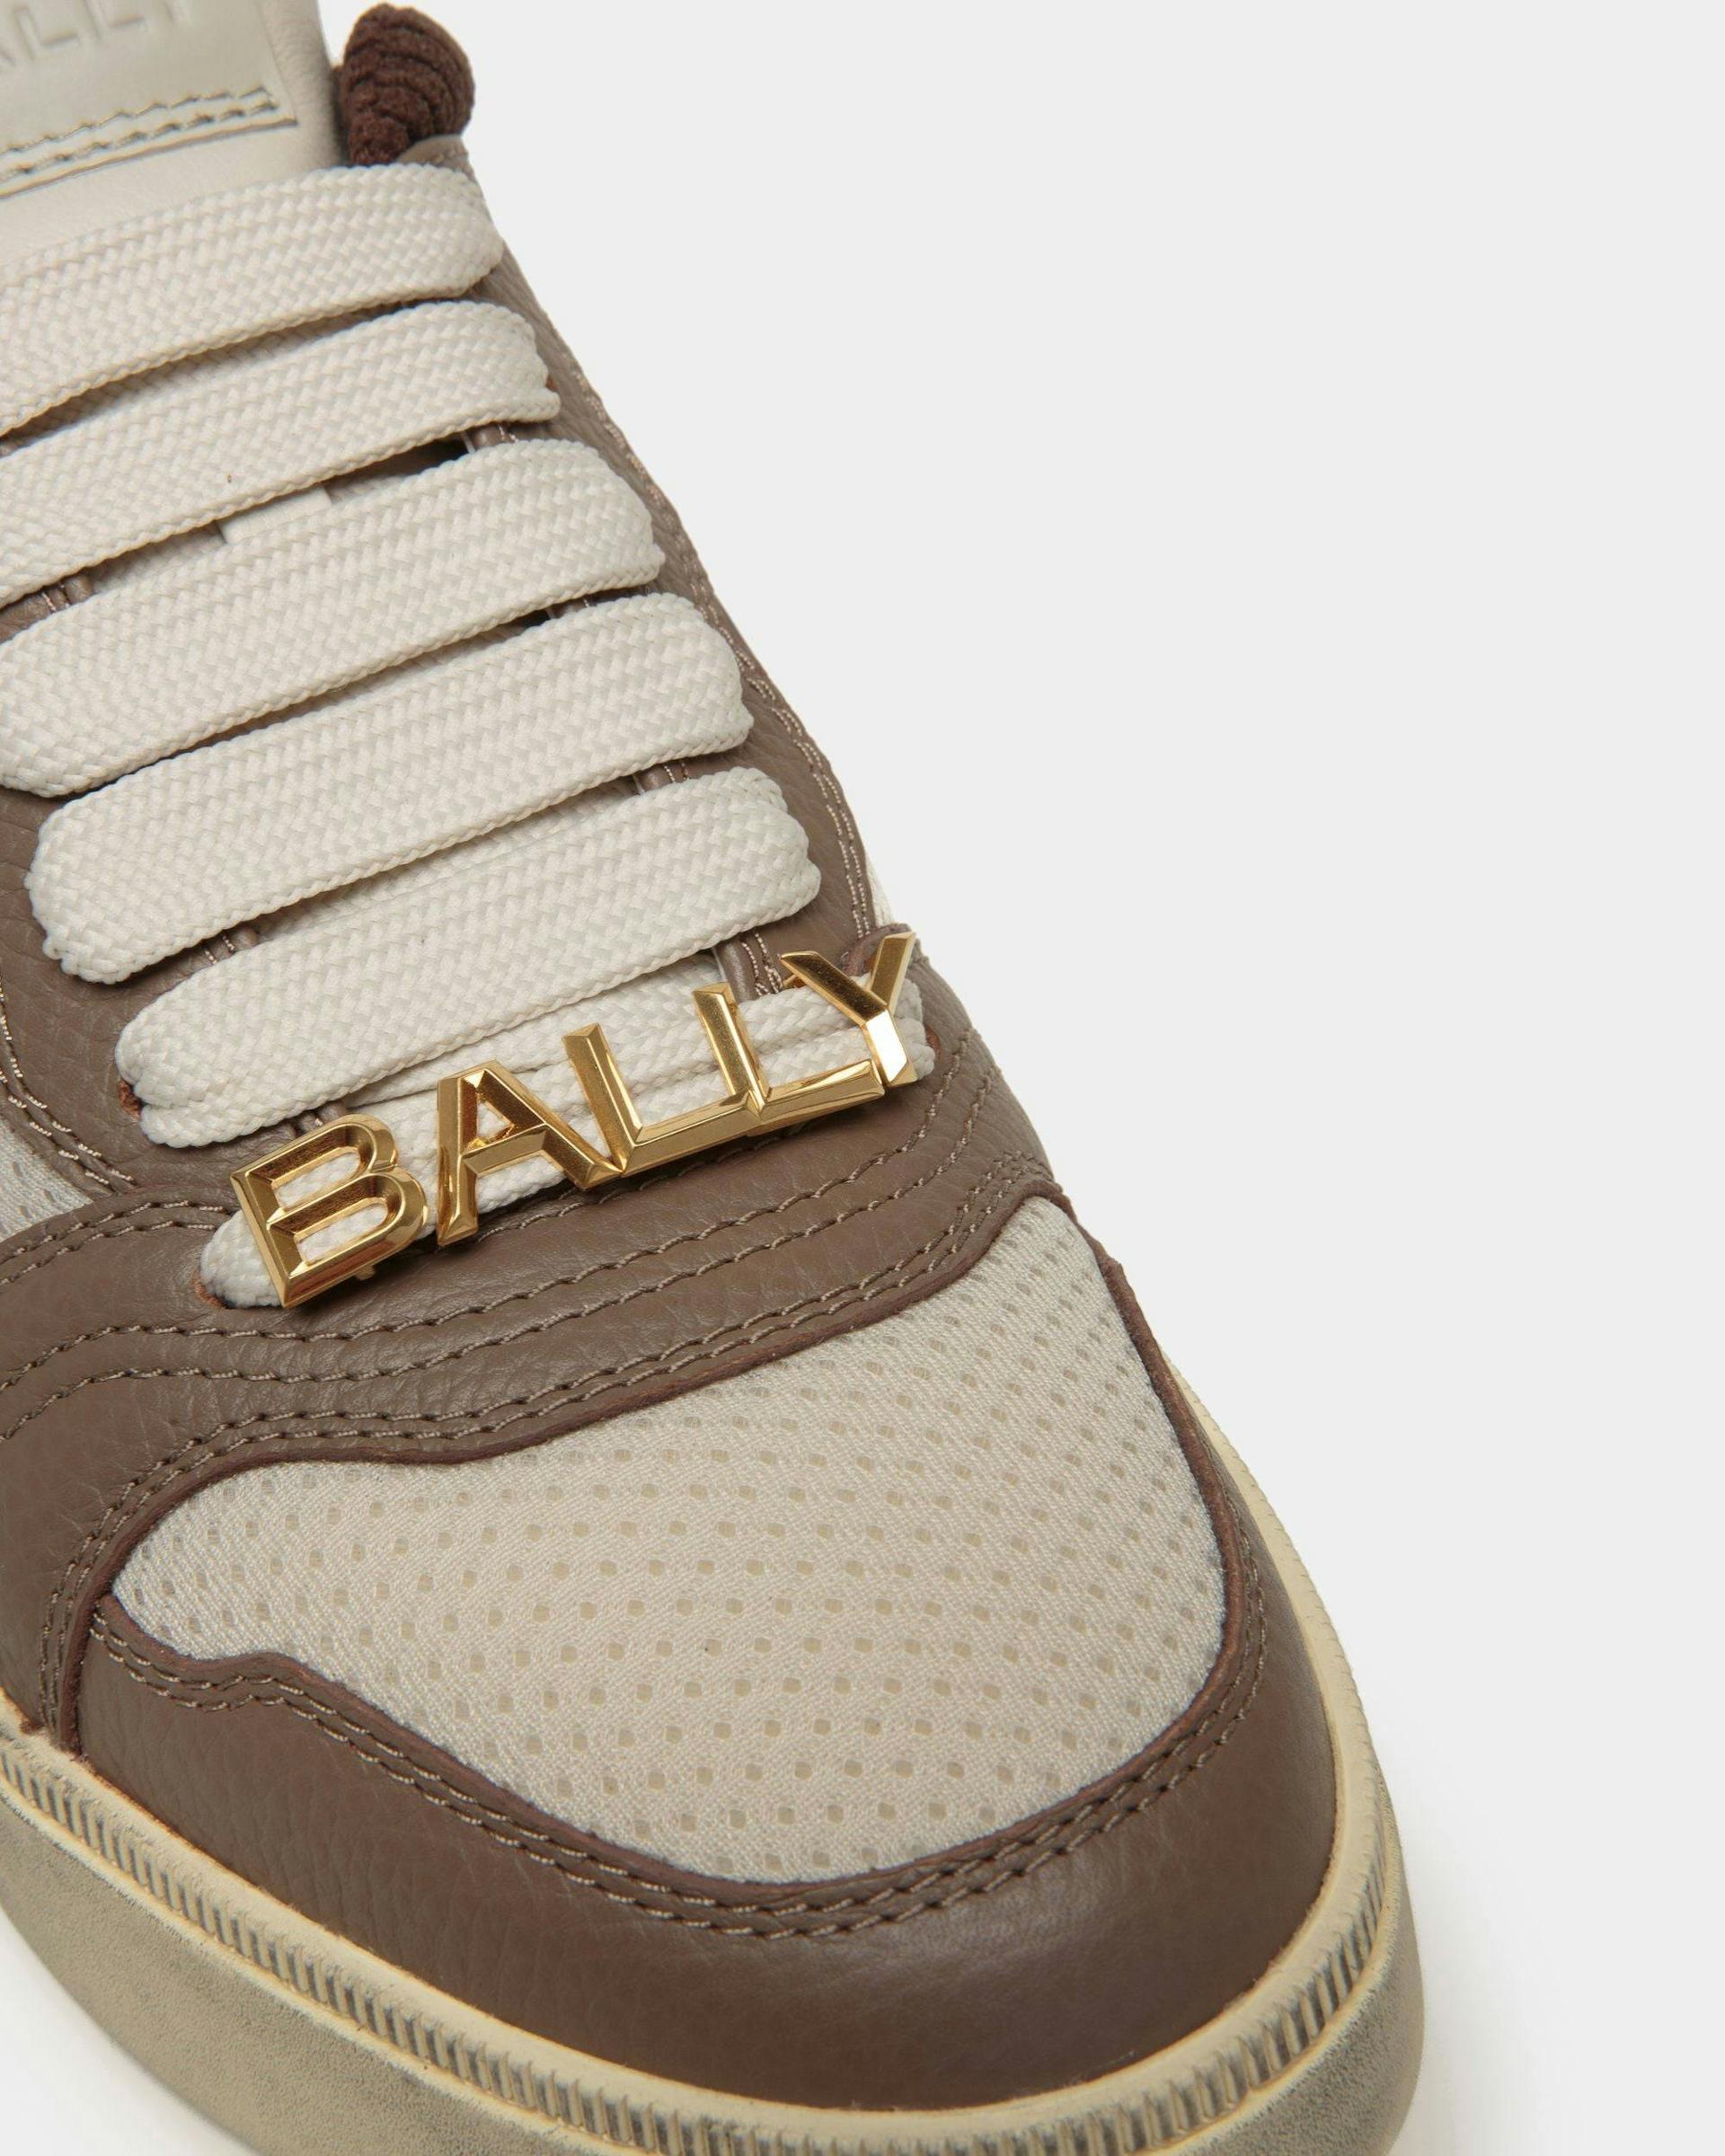 Men's Raise Sneaker in Multicolor Nylon | Bally | Still Life Detail